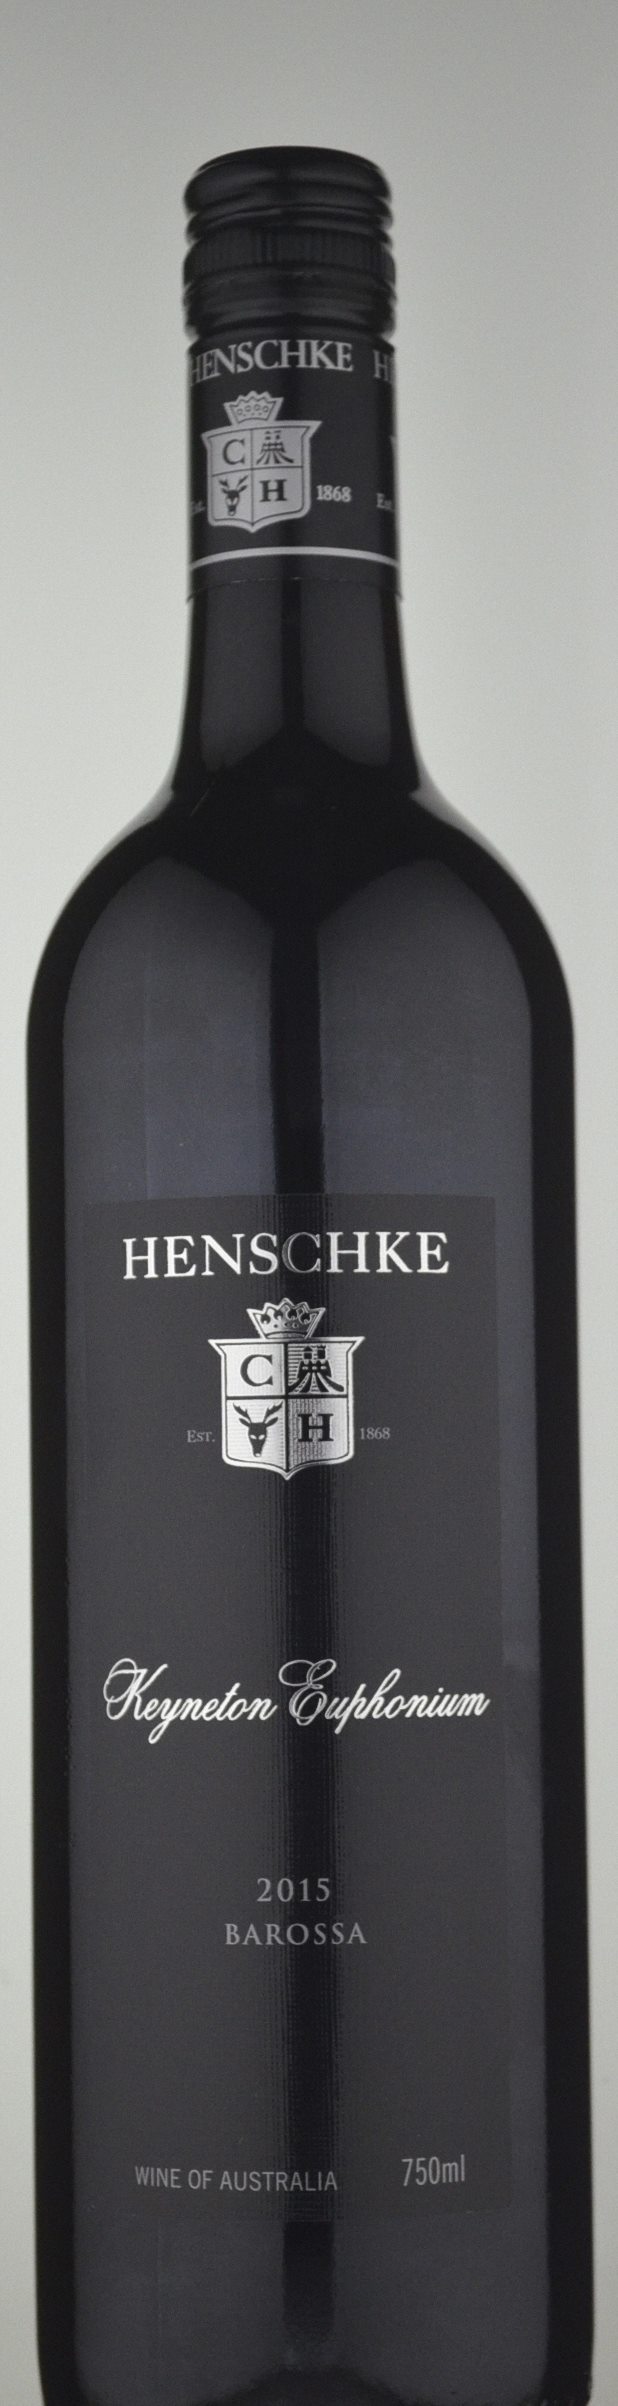 Henschke Keyneton Euphonium Shiraz Cabernet Merlot 2015